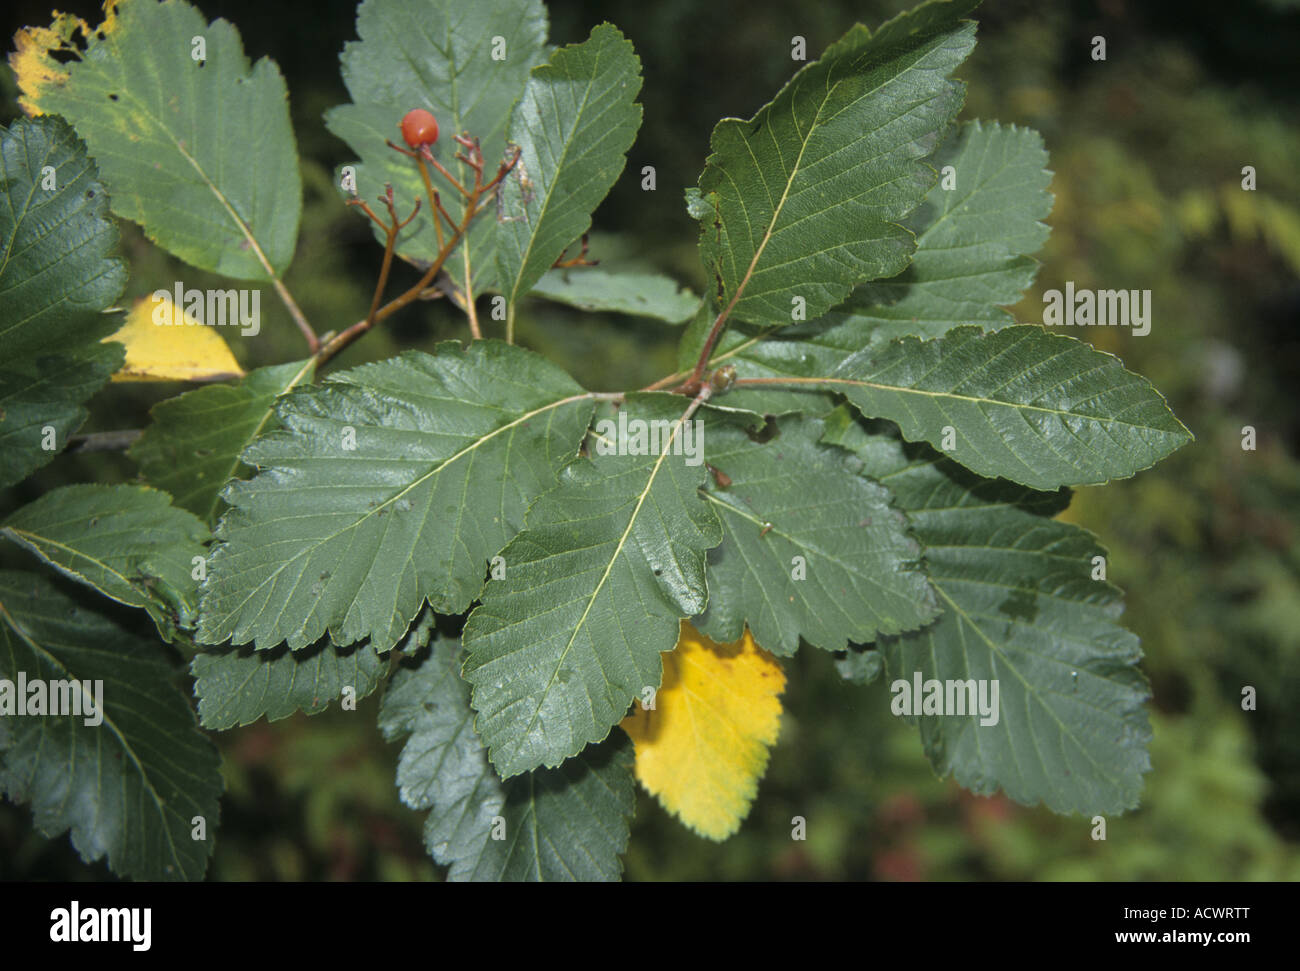 Mougeot s Whitebeam Sorbus mougeotii leaf Stock Photo